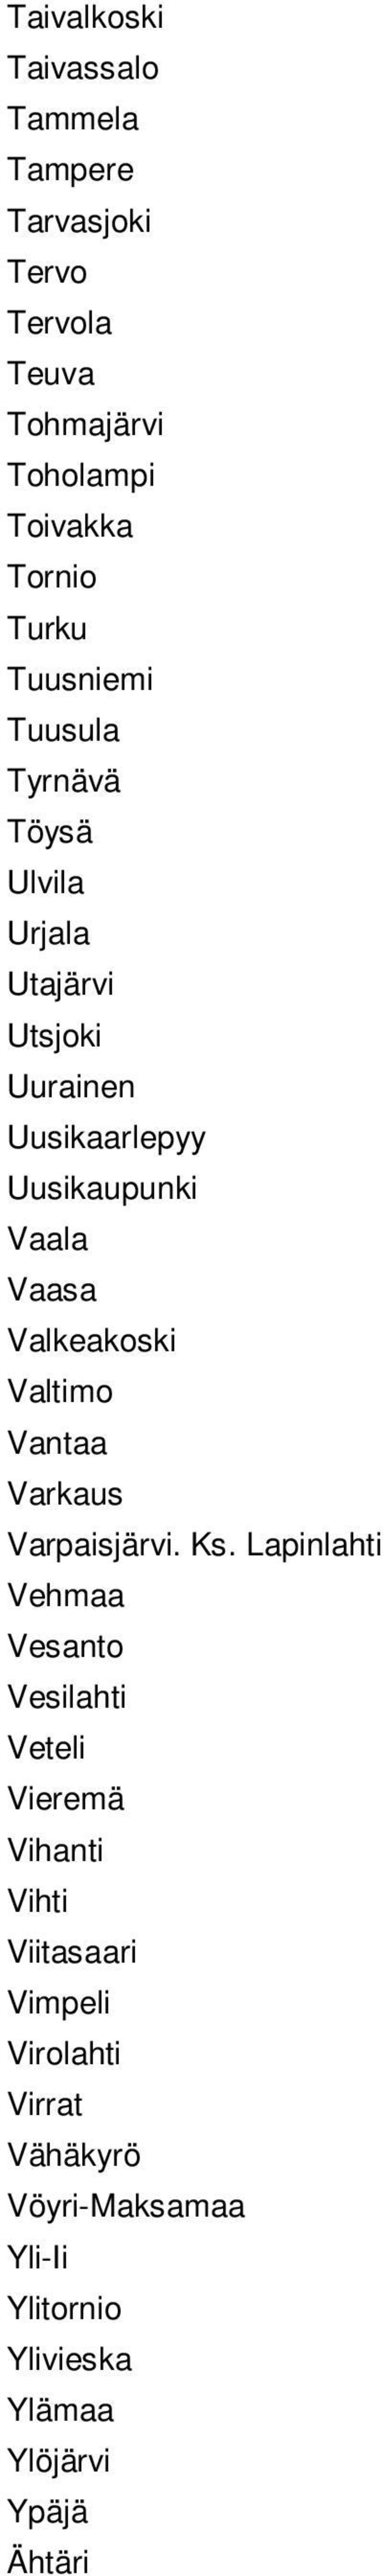 Valkeakoski Valtimo Vantaa Varkaus Varpaisjärvi. Ks.